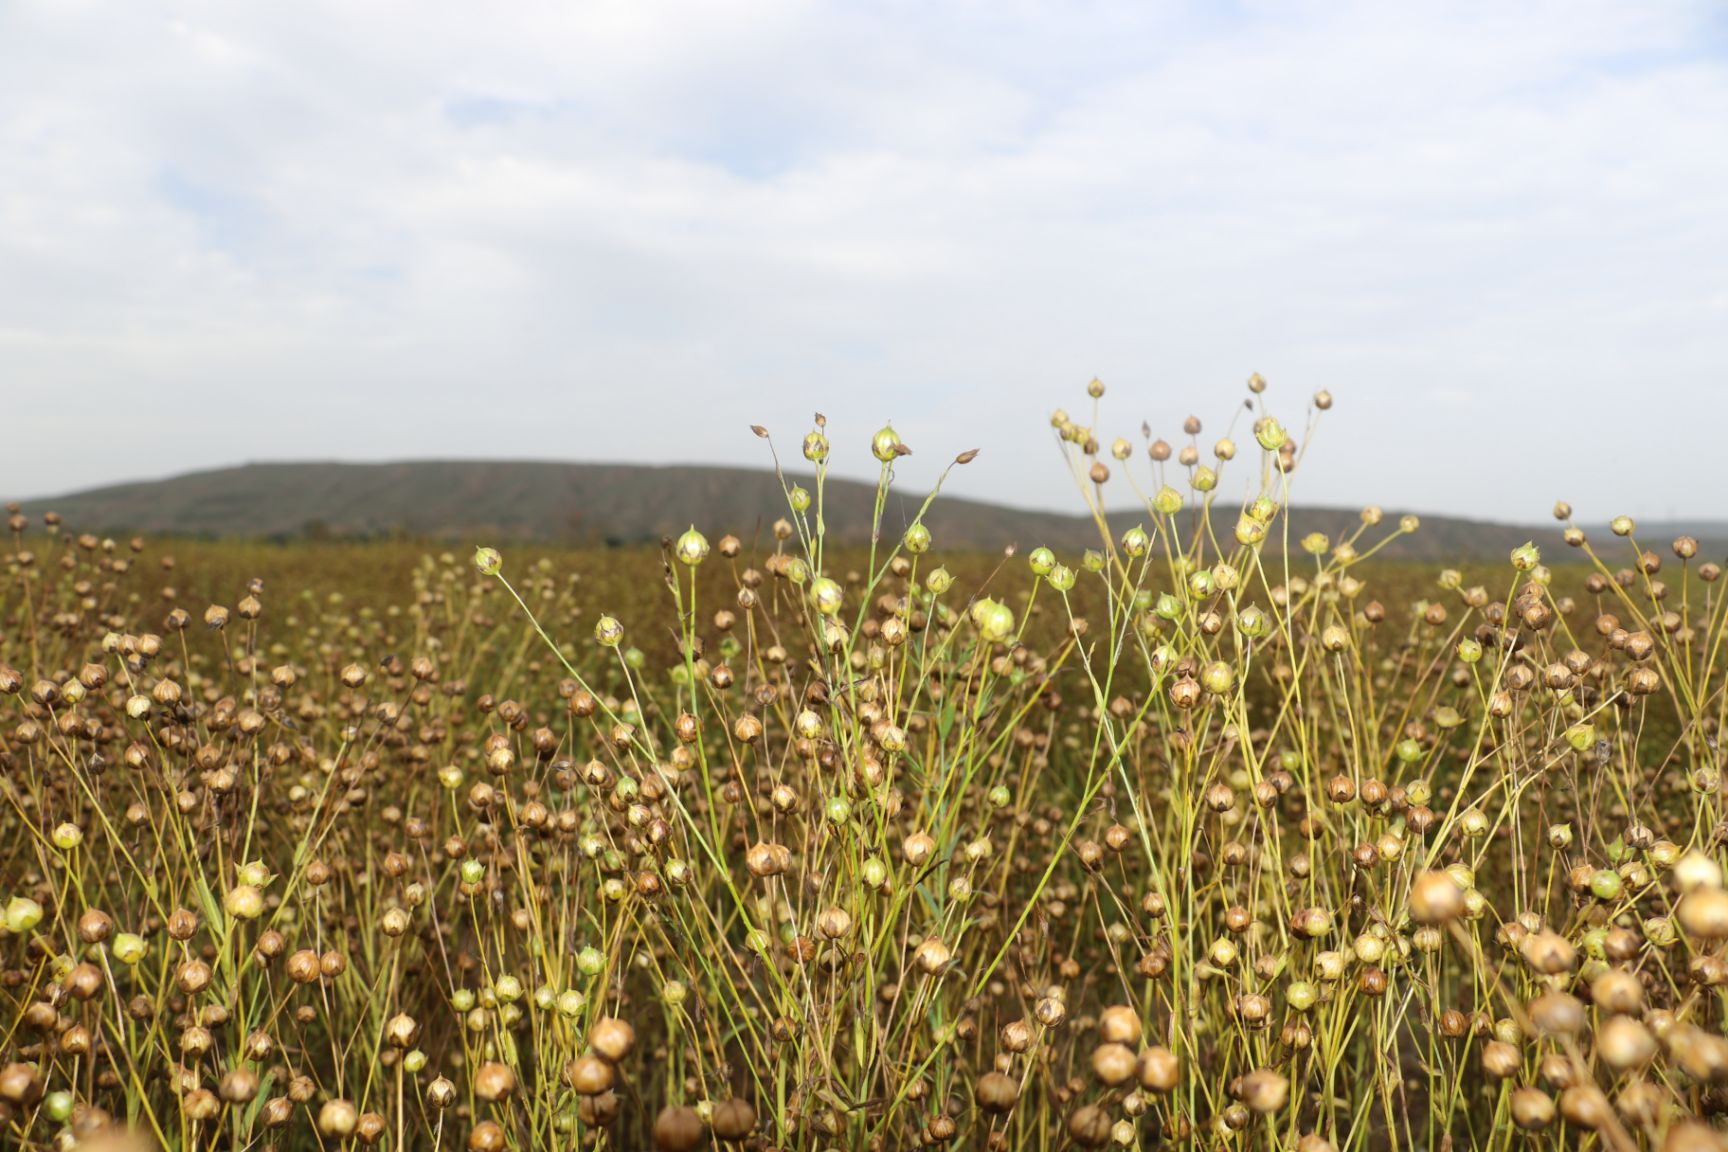 黄金亚麻籽,生长在六盘山一带,自有种植基地,无工业污染